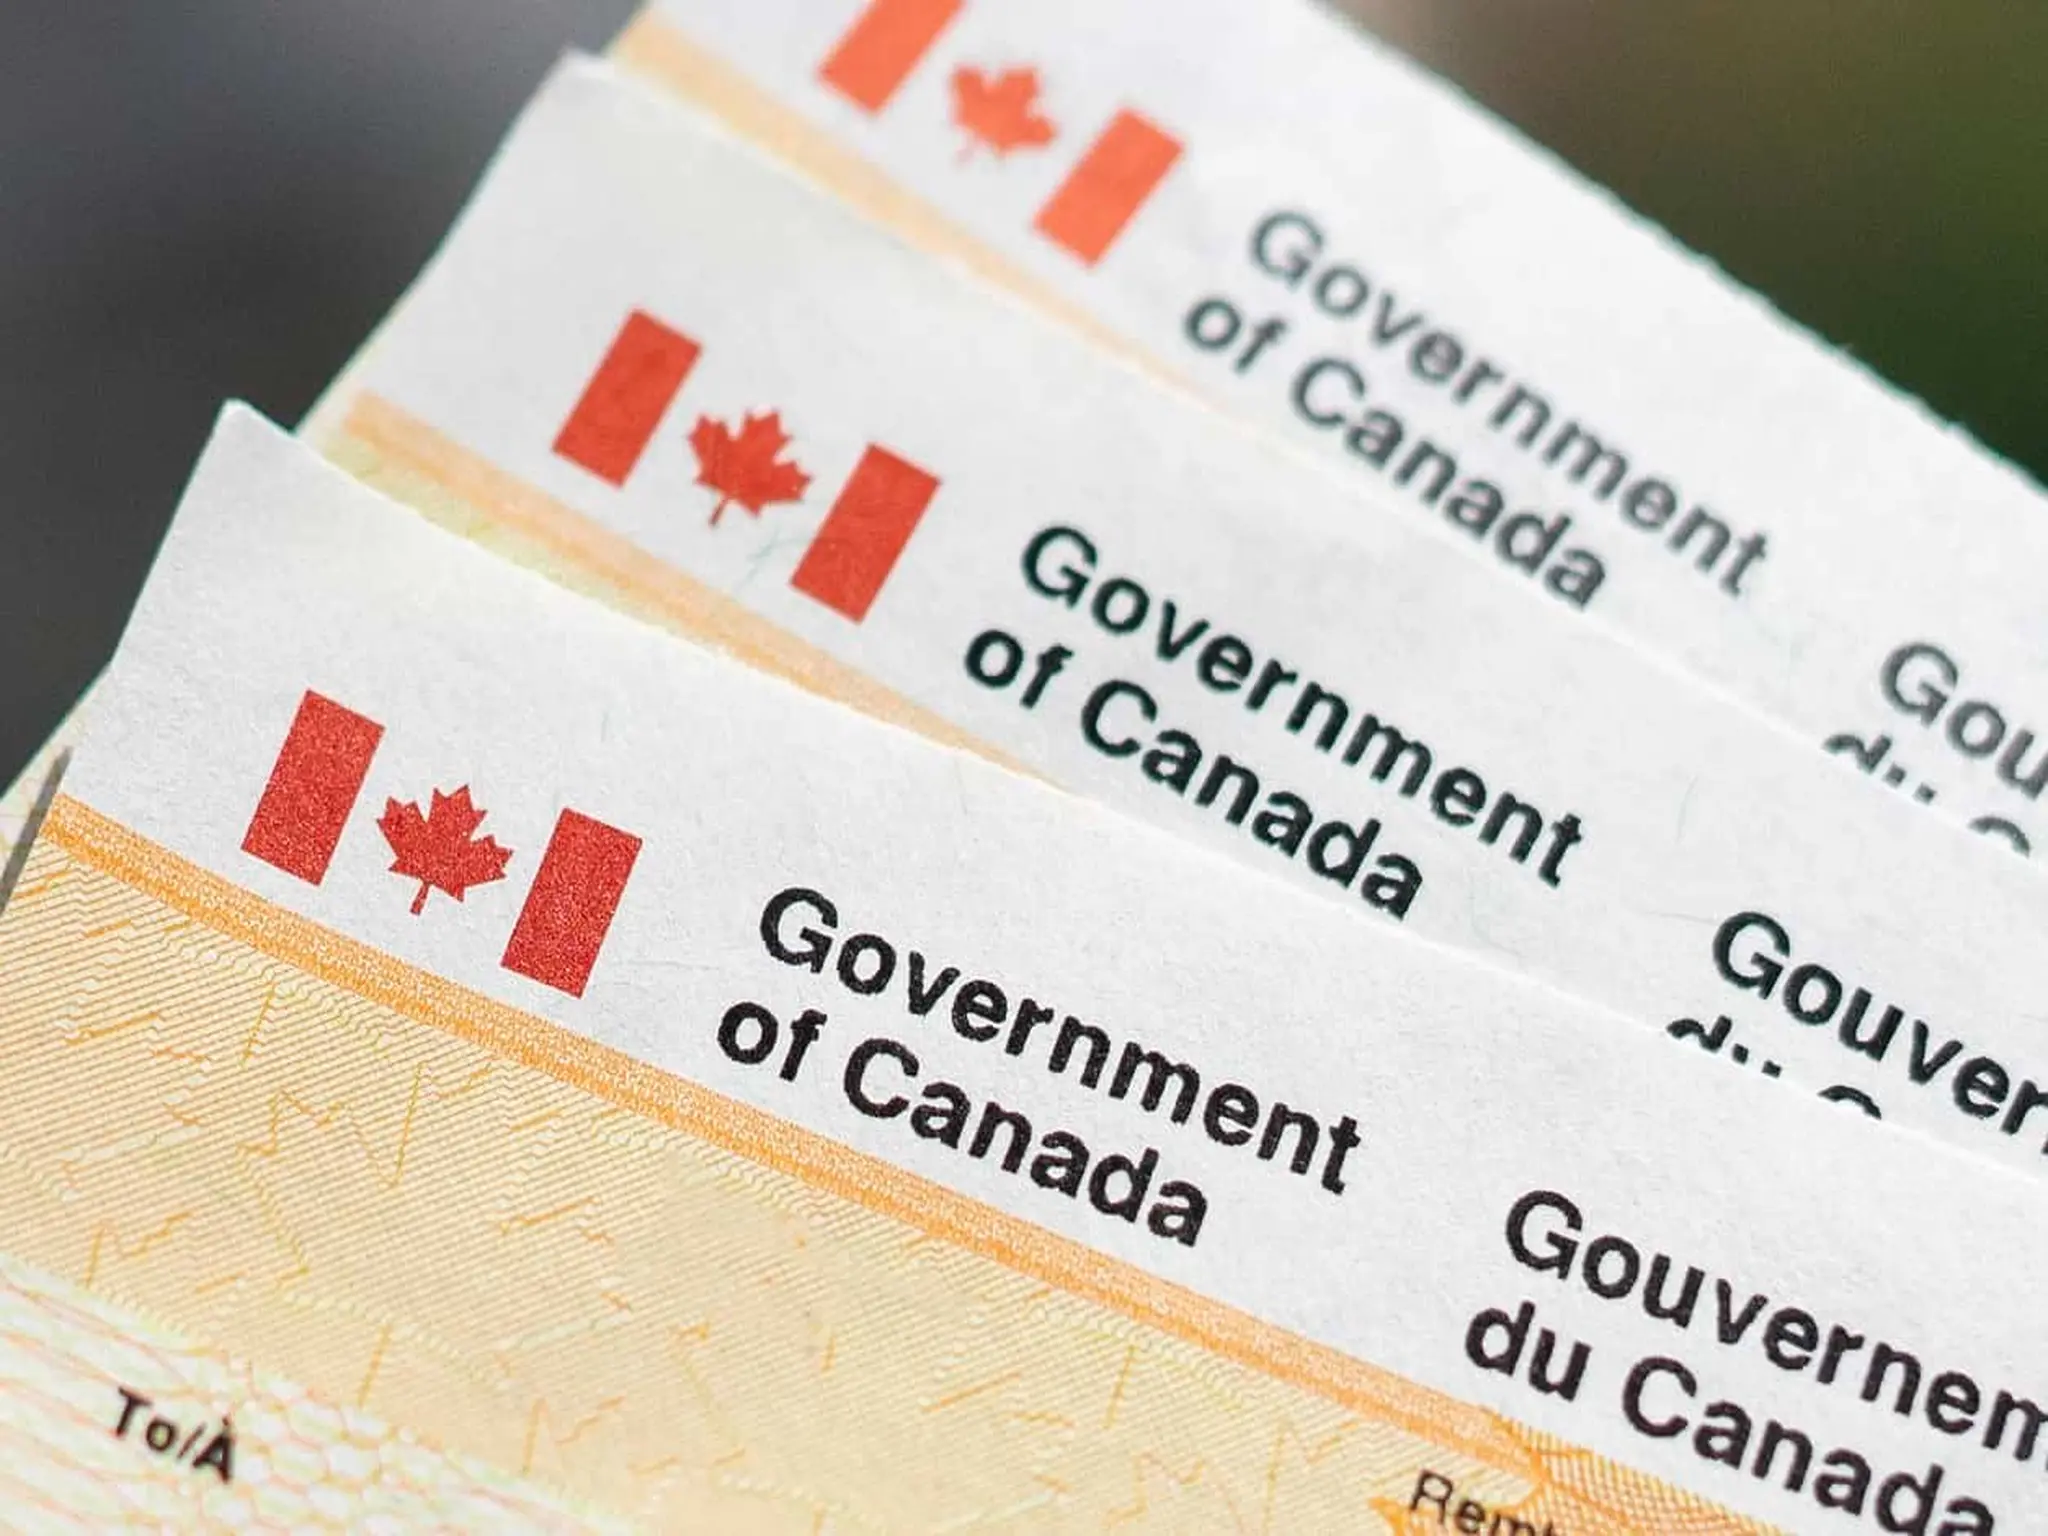 بيان جديد بشأن ارتفاع مستويات الهجرة إلى كندا